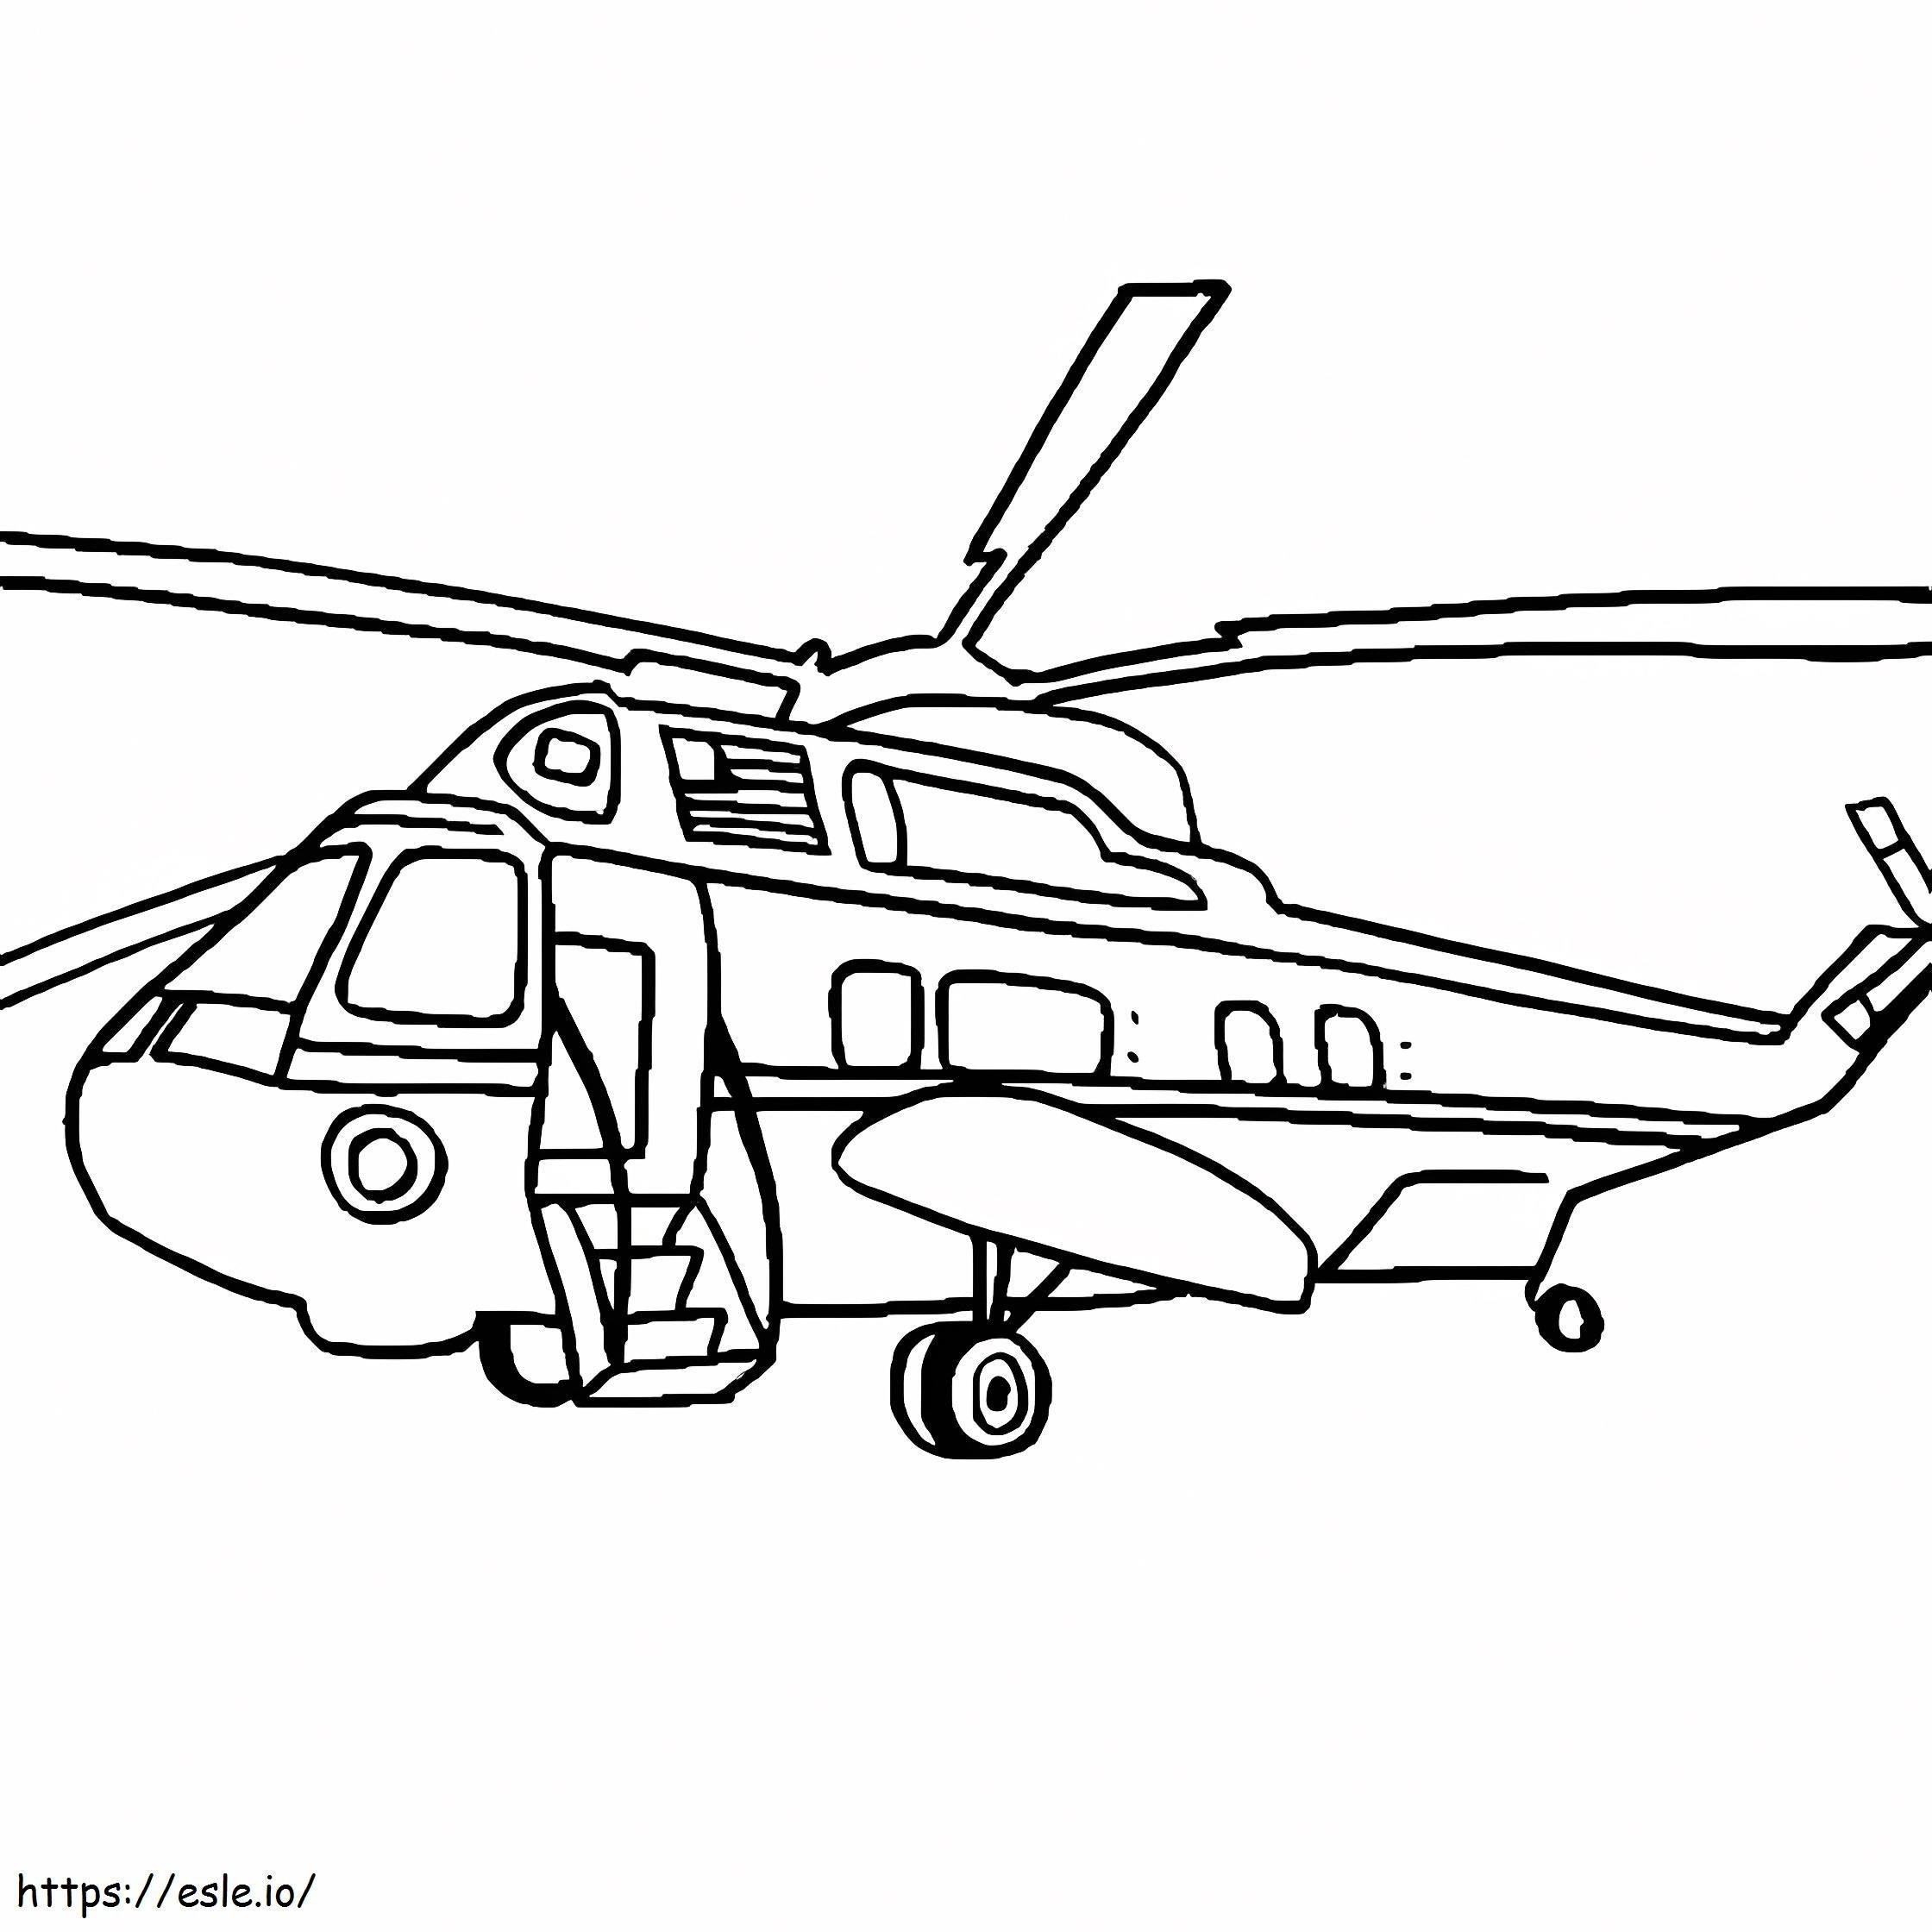 Helikopter Blackhawk boyama